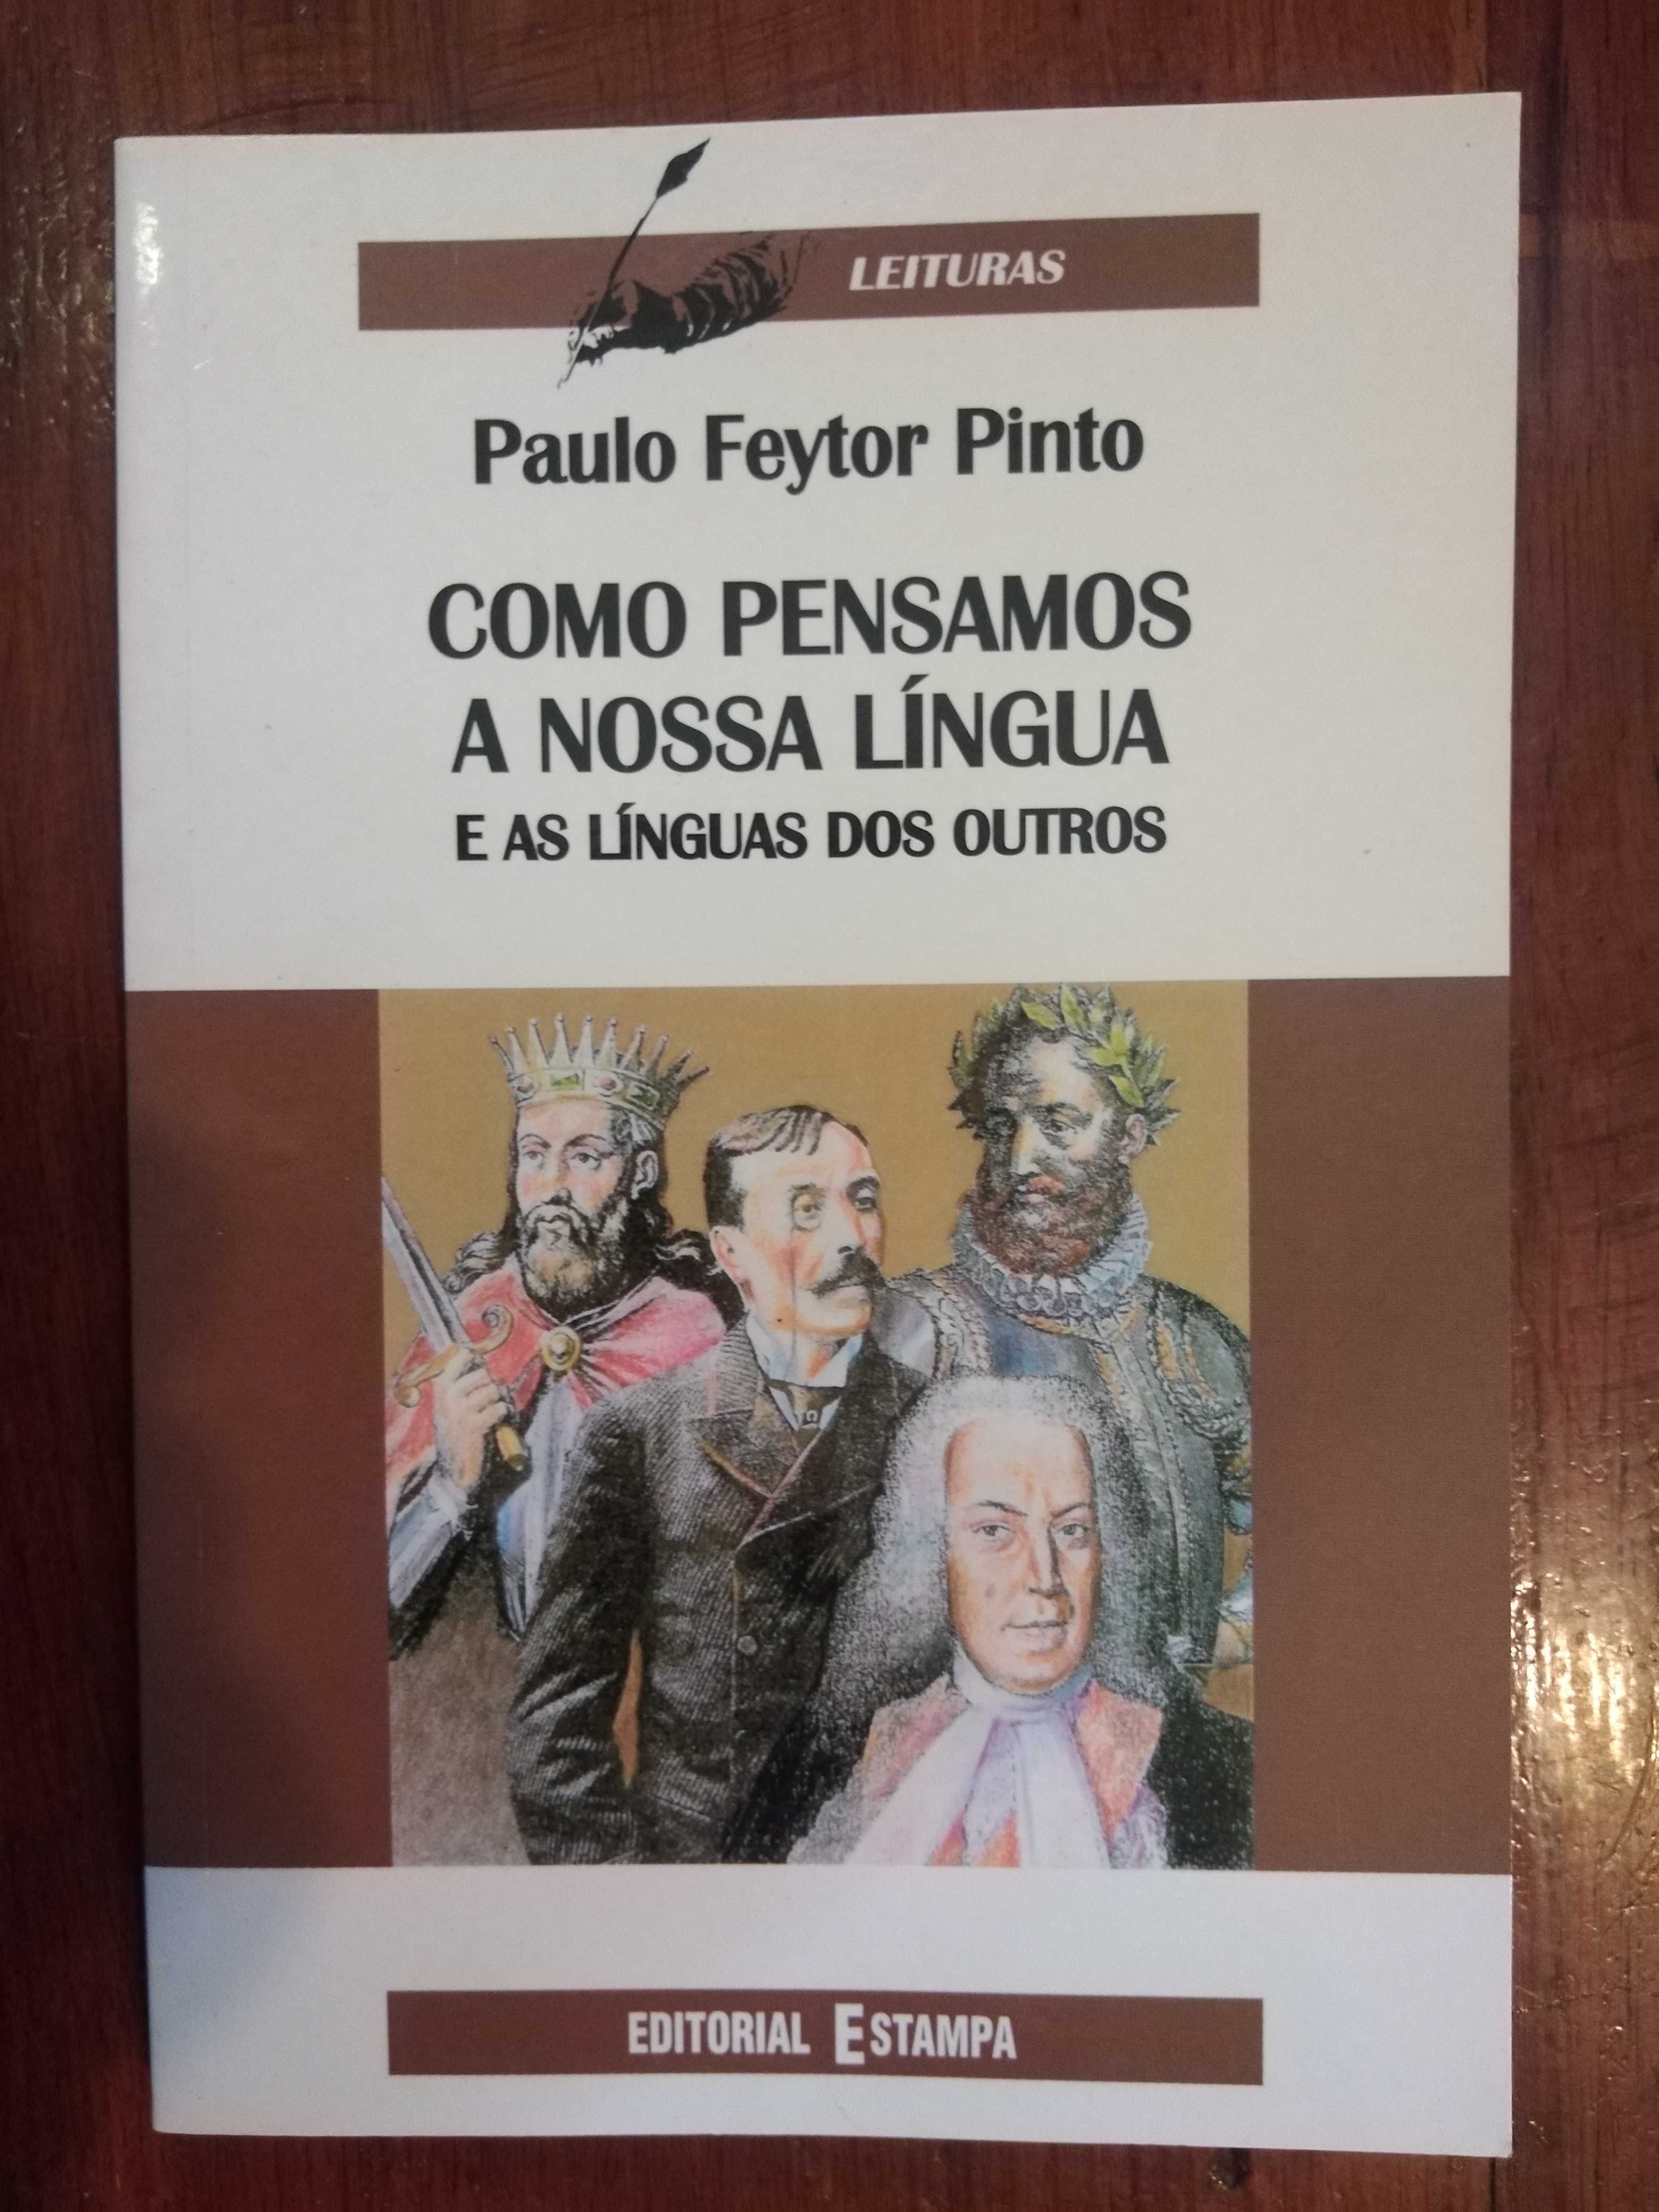 Paulo Feytor Pinto - Como pensamos a nossa língua